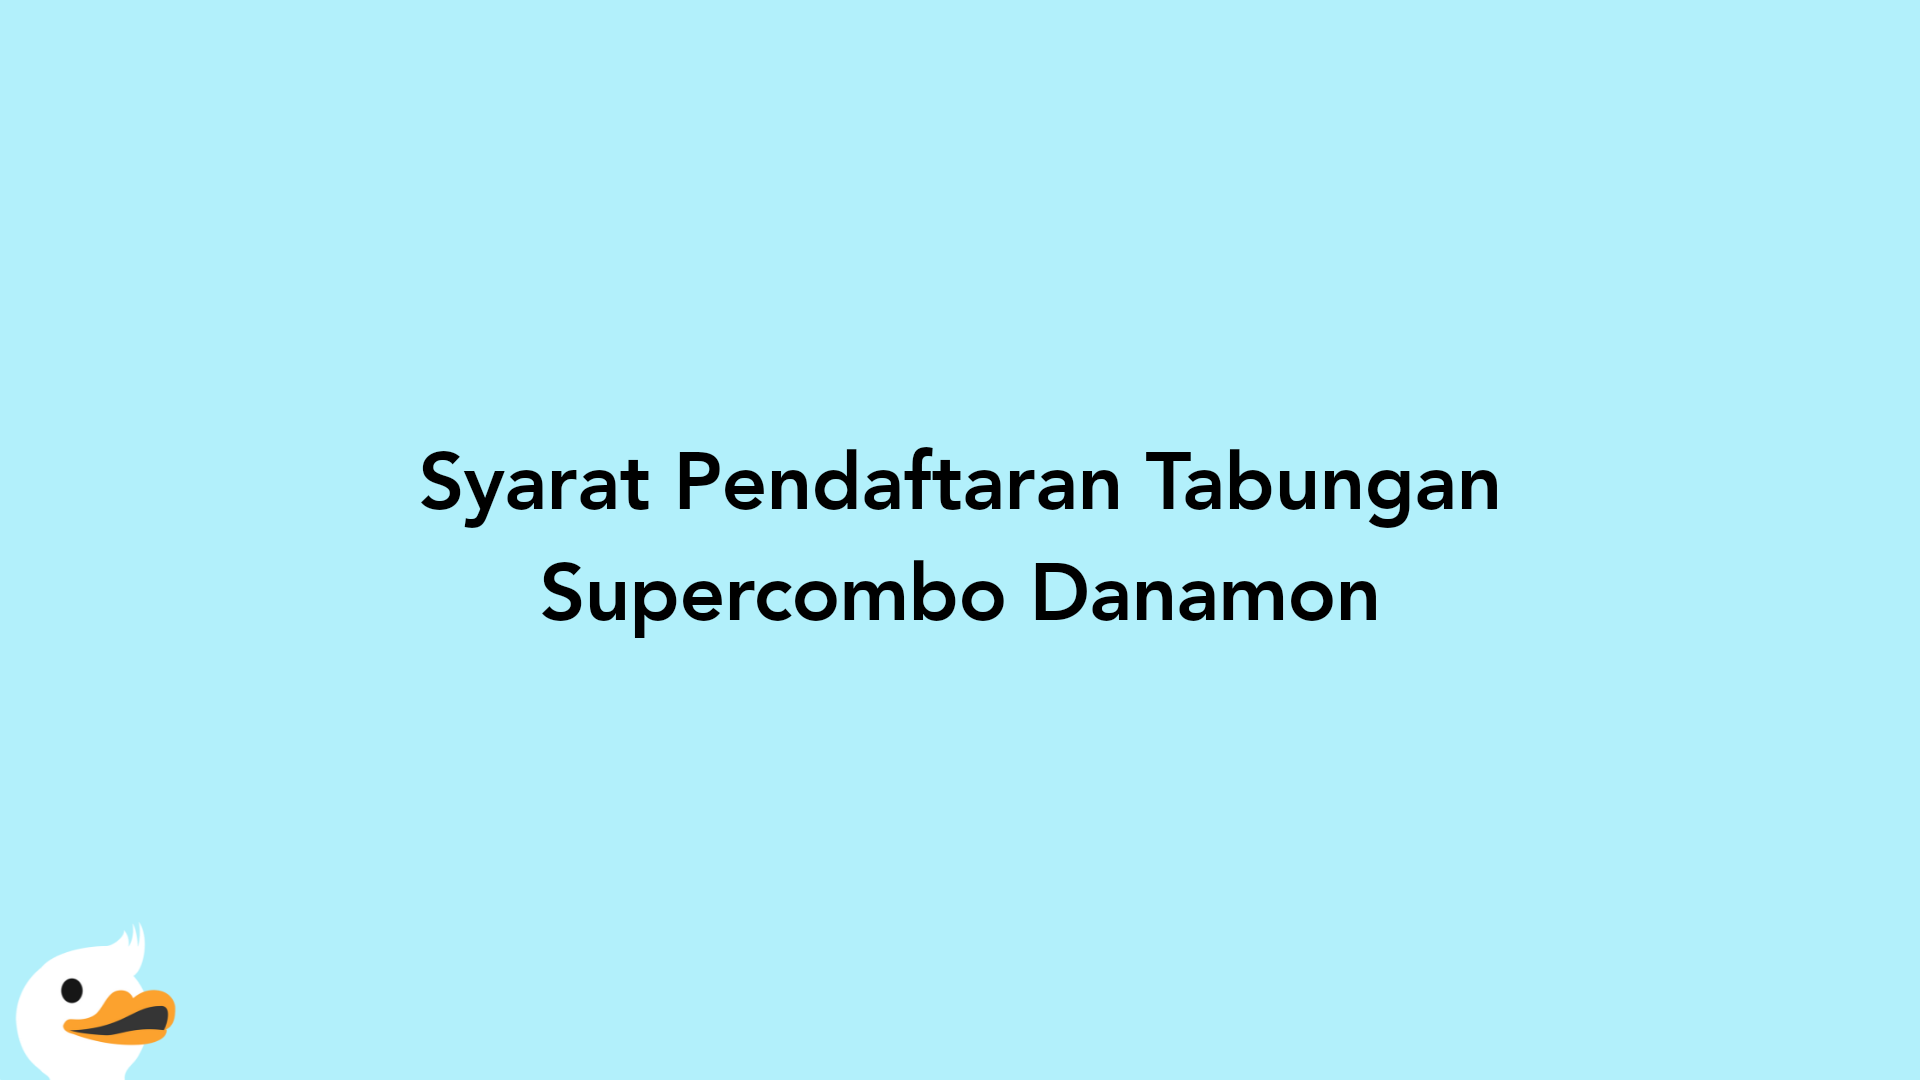 Syarat Pendaftaran Tabungan Supercombo Danamon